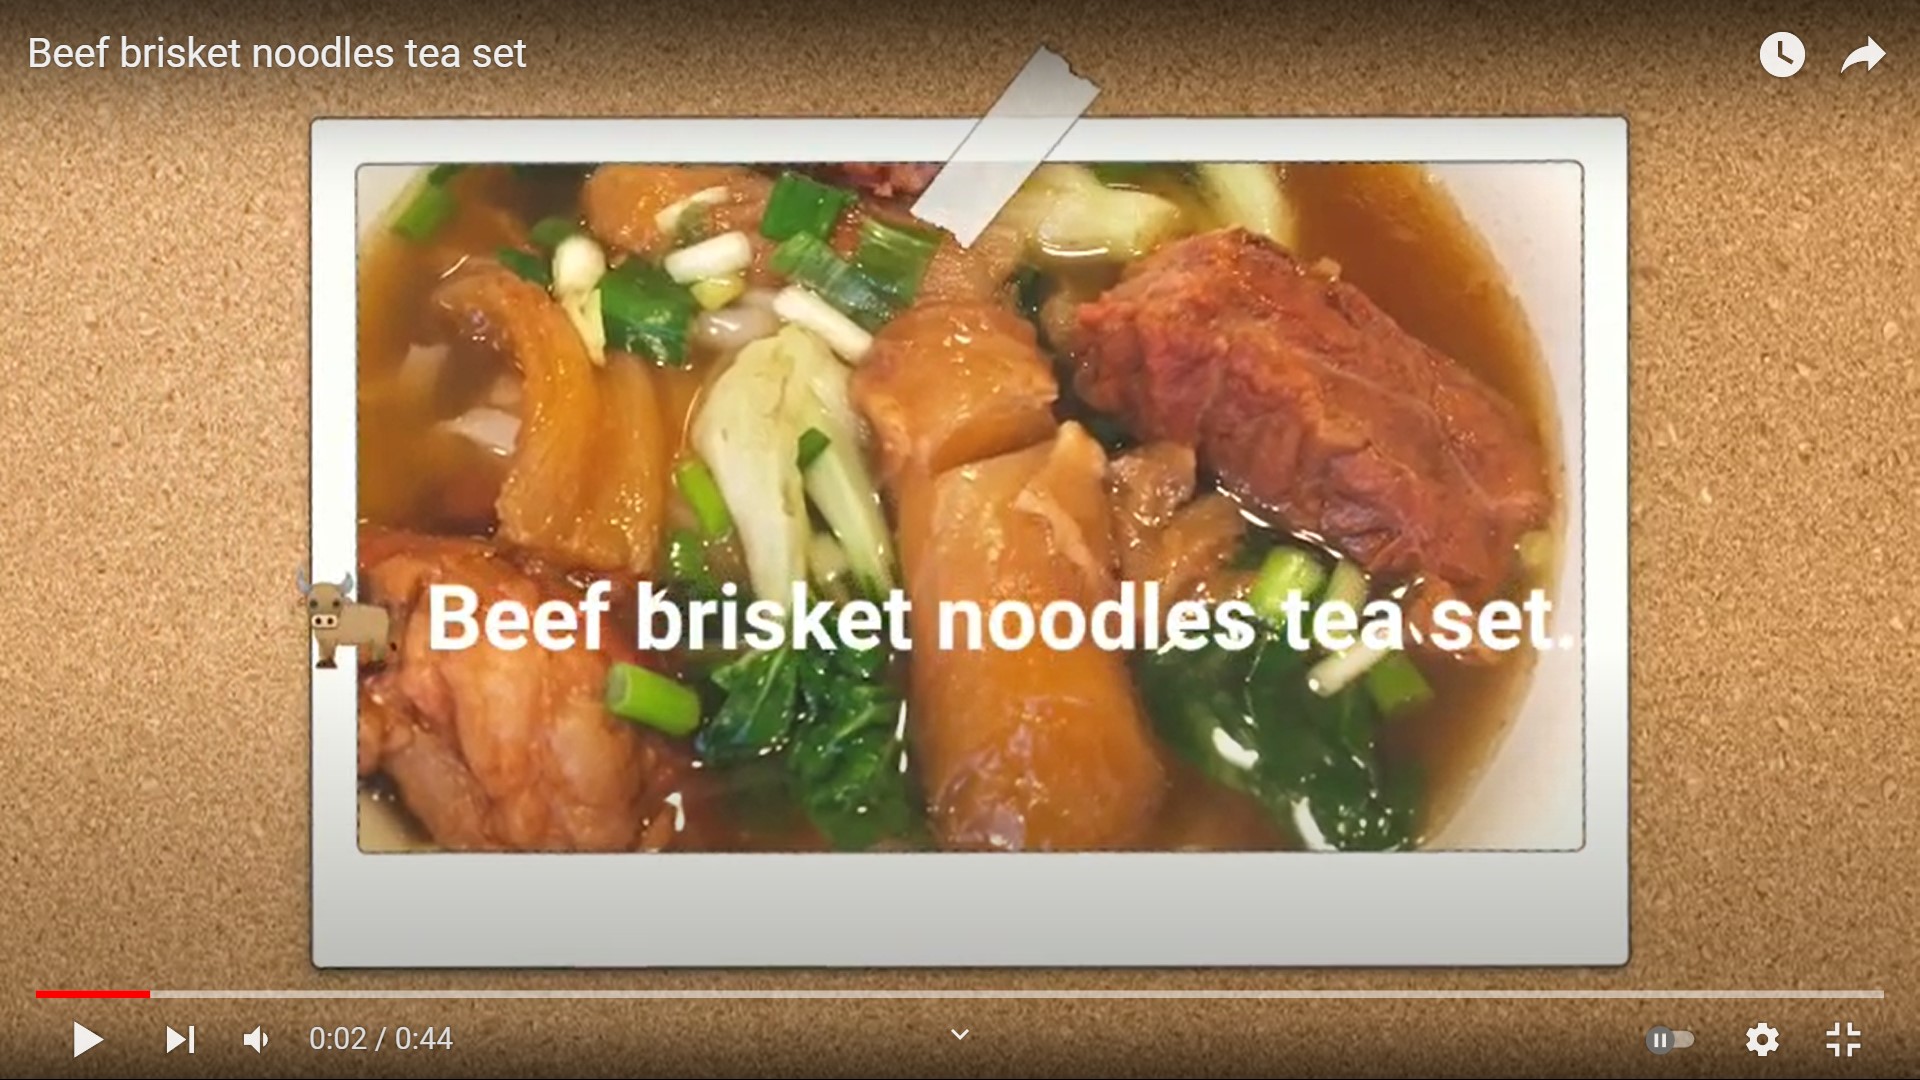 Frank’s “Beef brisket noodles tea set” snapshots video